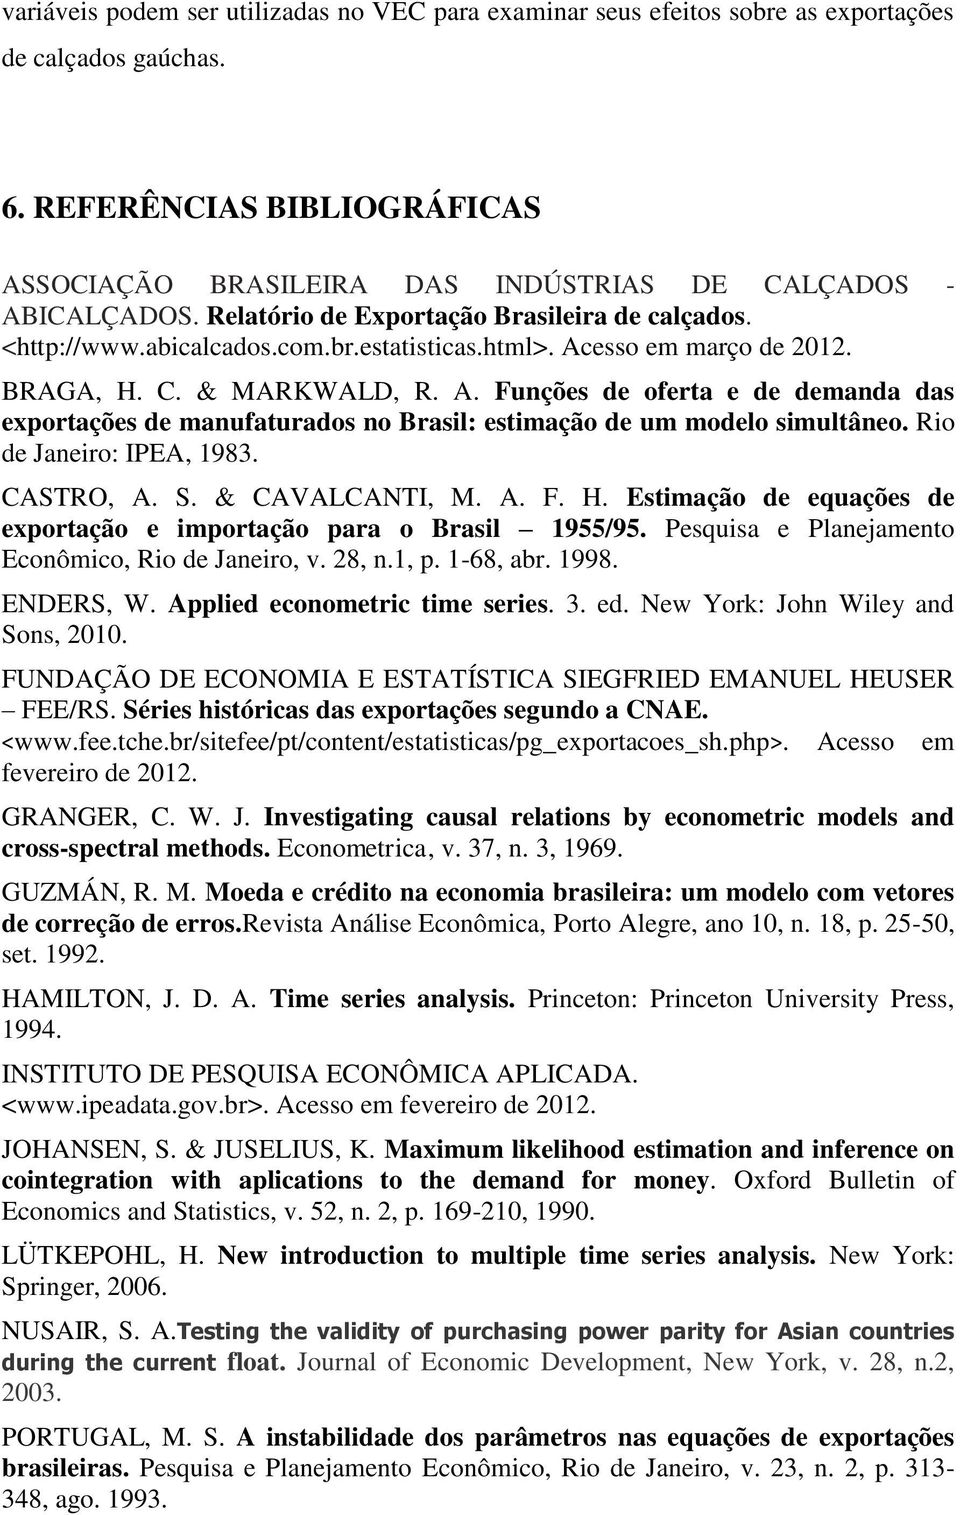 esso em março de 2012. BRAGA, H. C. & MARKWALD, R. A. Funções de oferta e de demanda das exportações de manufaturados no Brasil: estimação de um modelo simultâneo. Rio de Janeiro: IPEA, 1983.